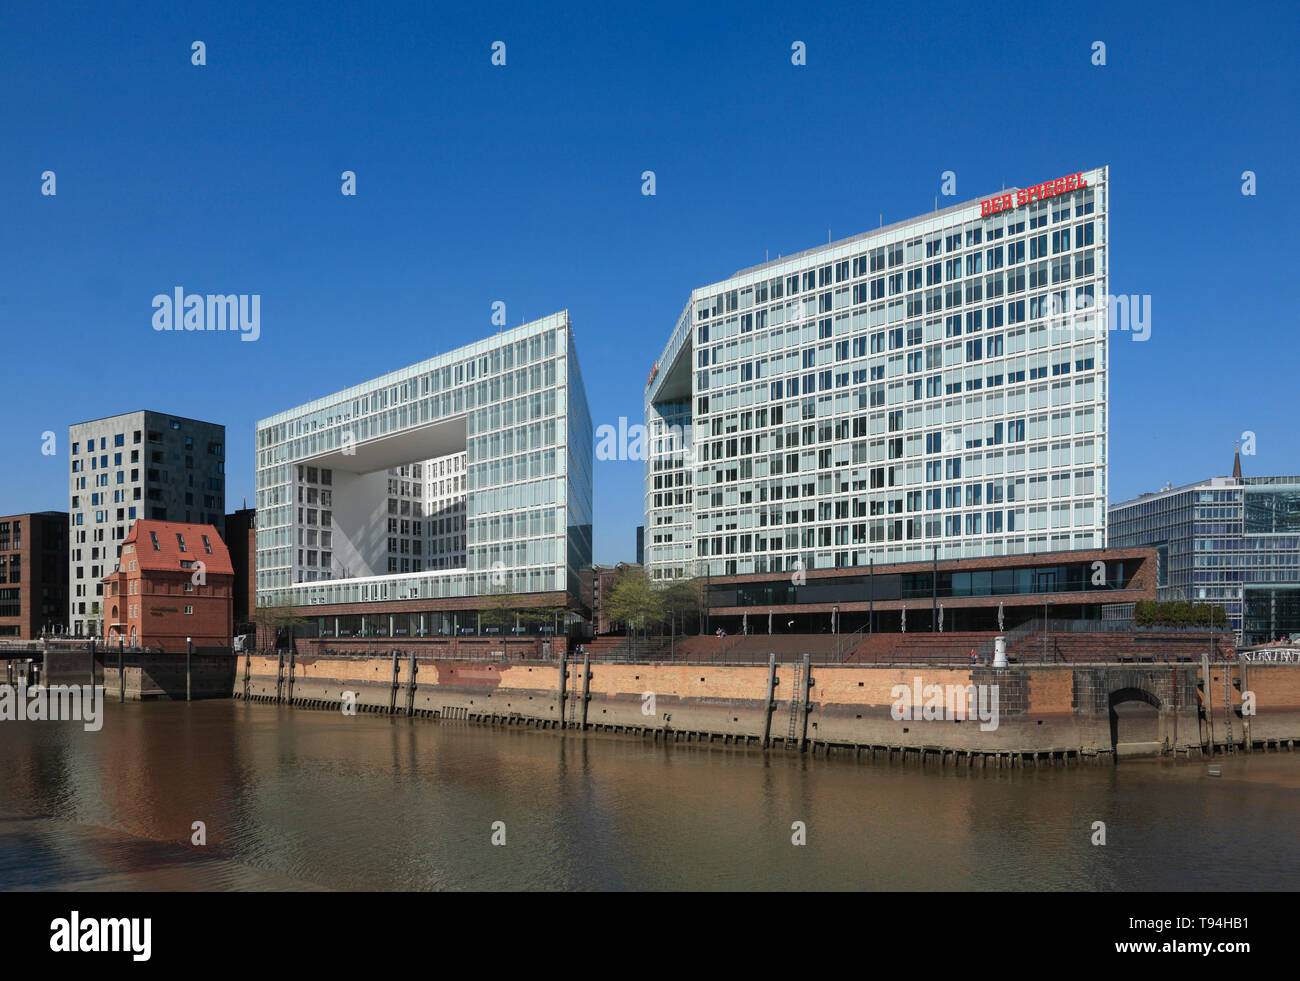 Spiegel-maison d'édition, Ericusspitze, Hafencity, Hambourg, Allemagne, Europe Banque D'Images